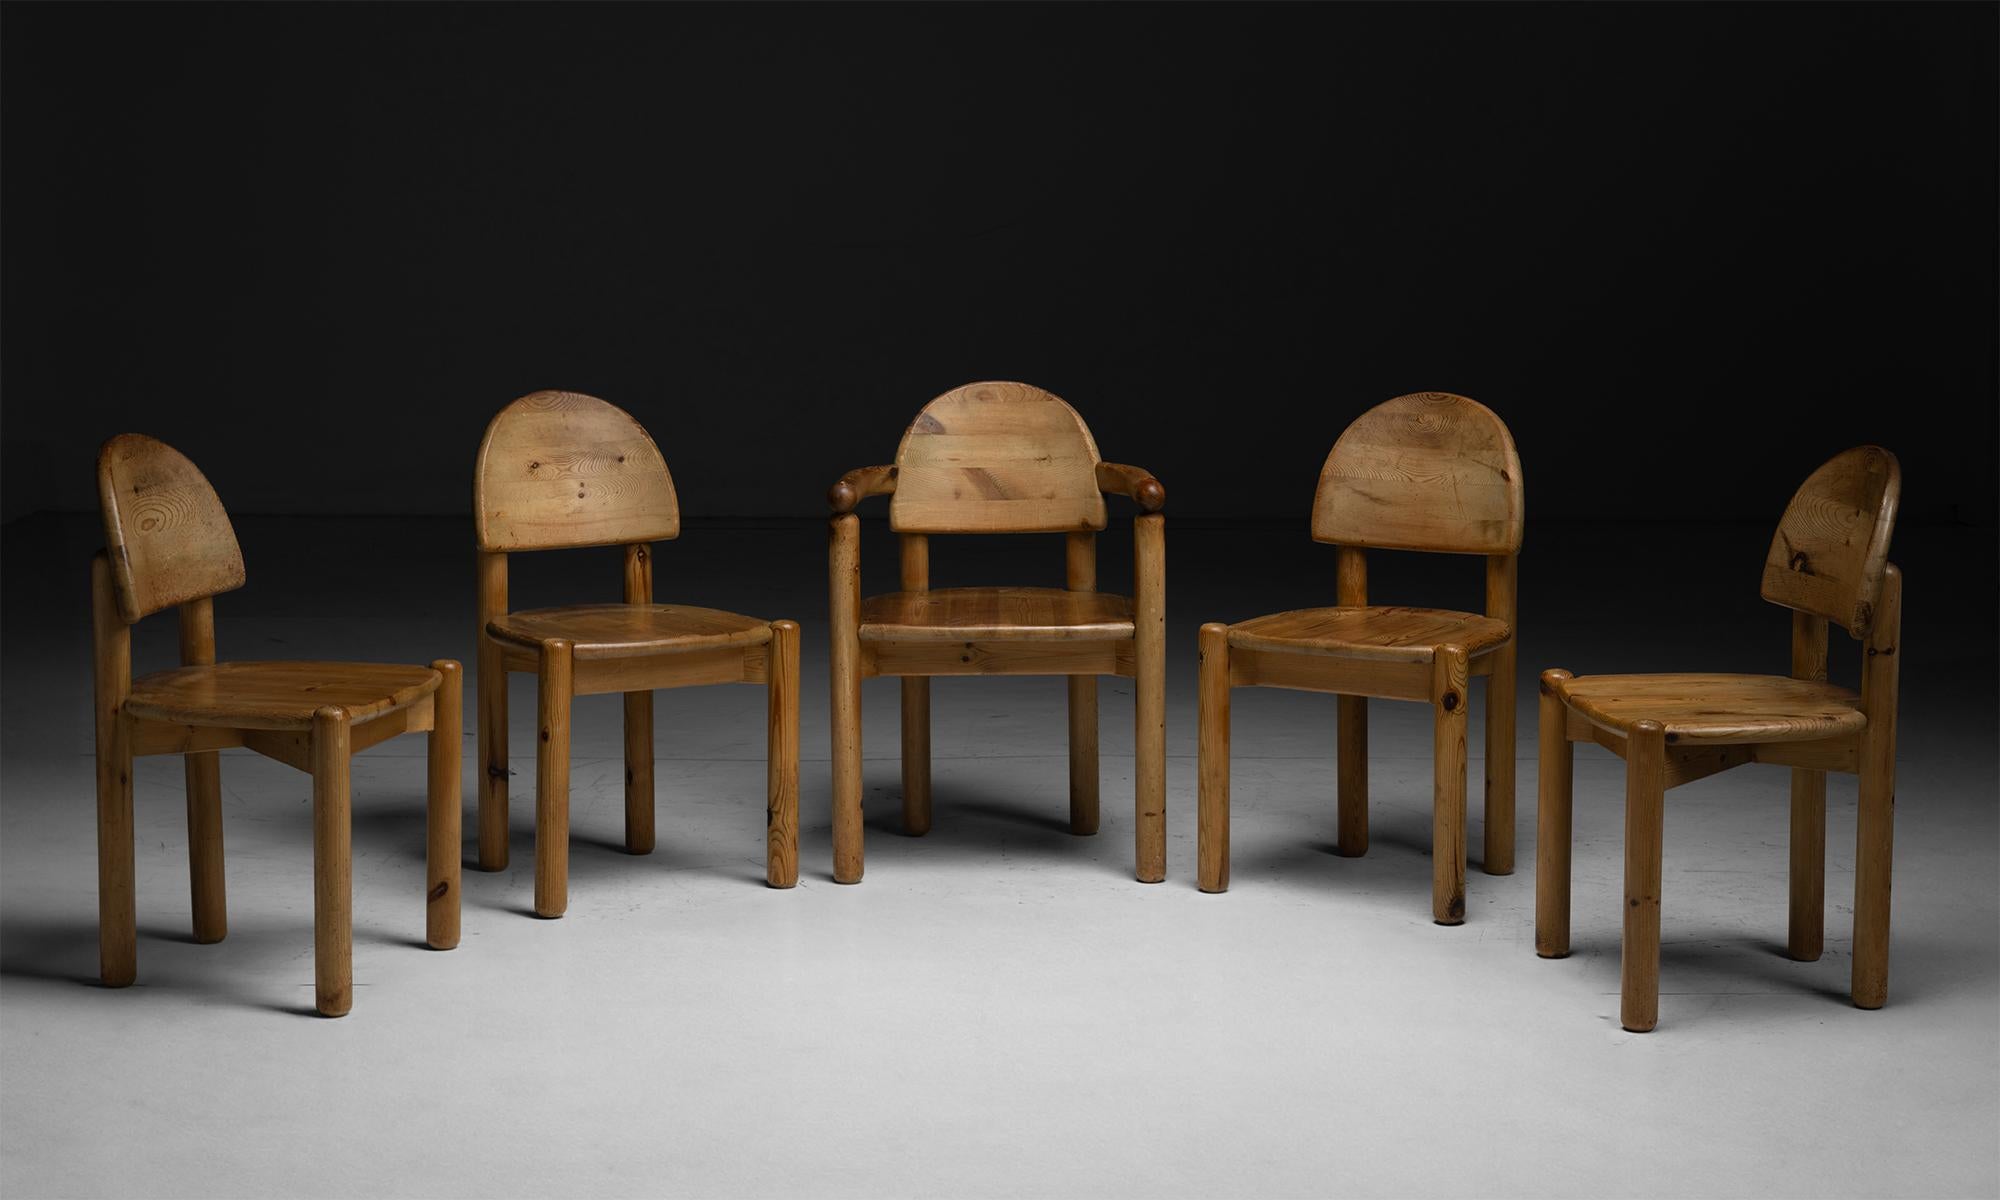 Rene Daumiller Esszimmerstühle

Dänemark um 1970

Hergestellt aus Kiefer, 2 Sessel und 4 Stühle in passender Patina.

19 